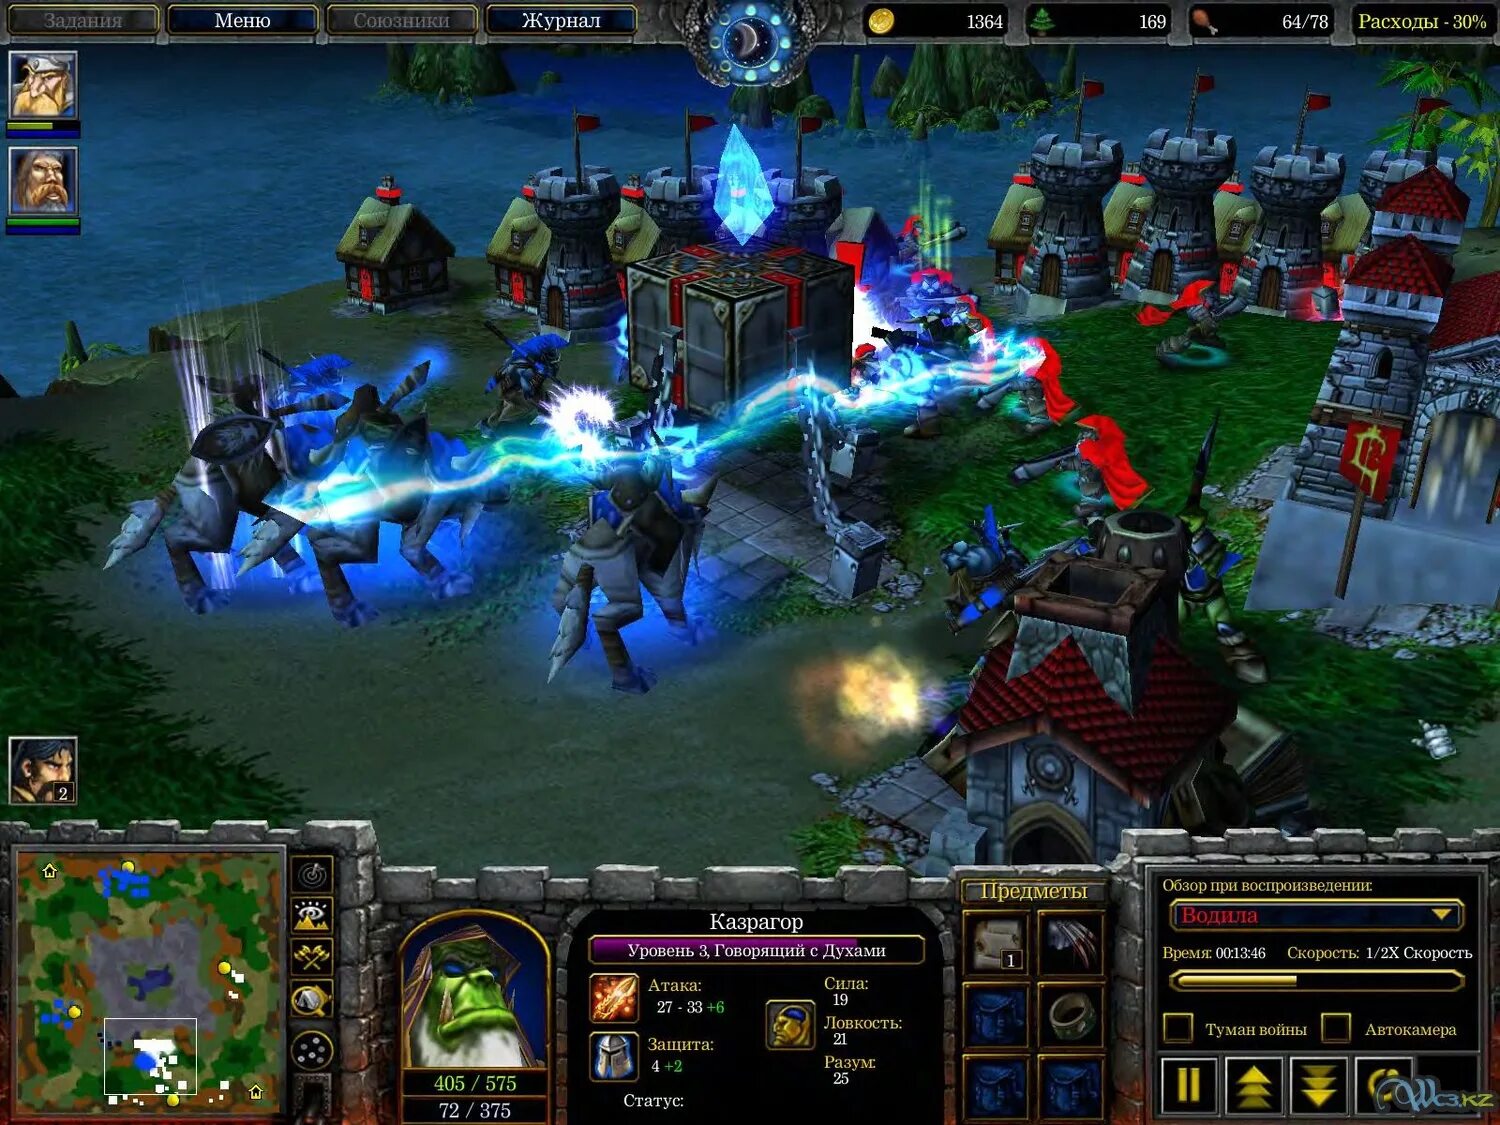 Оф сайт варкрафта. Варкрафт 3 2002. Варкрафт 3 игра. Warcraft III Fronzen Trone 2002 screemshot. Warcraft III Frozen Throne 2002 screenshot.